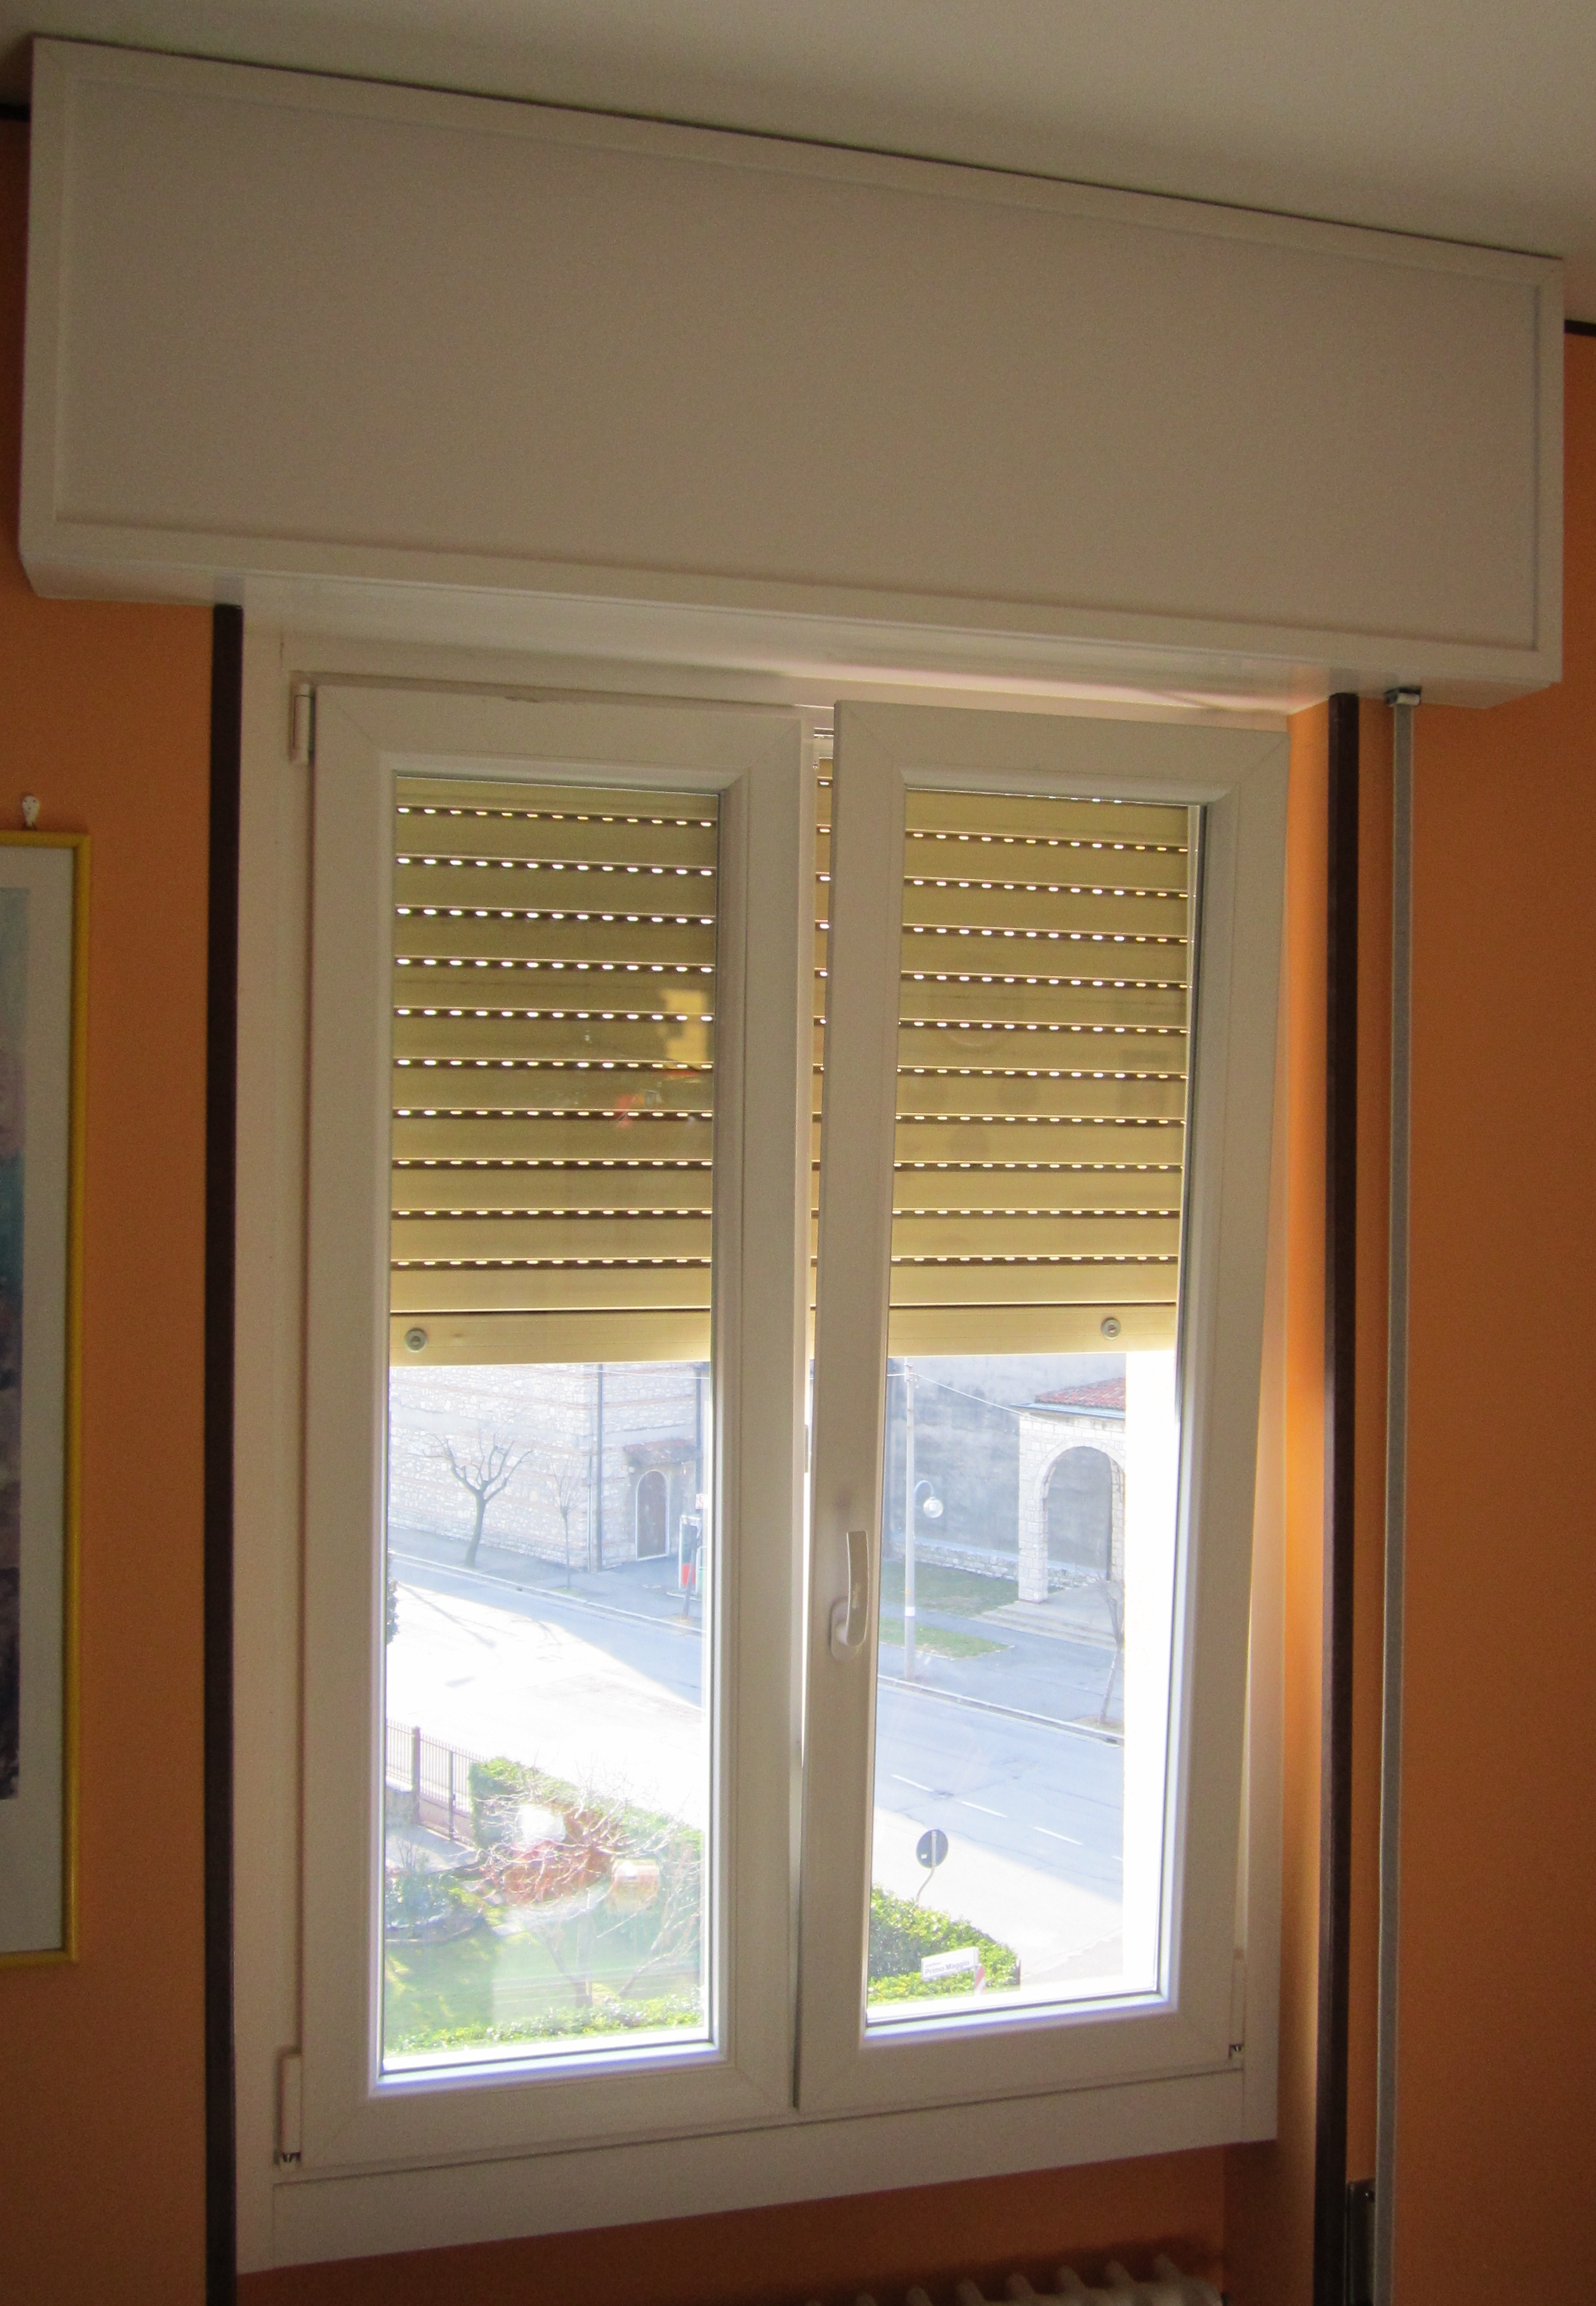 Foto 1 - V8 Serramenti: buona notizia, la detrazione del 65% sulle finestre è stata nuovamente prorogata!